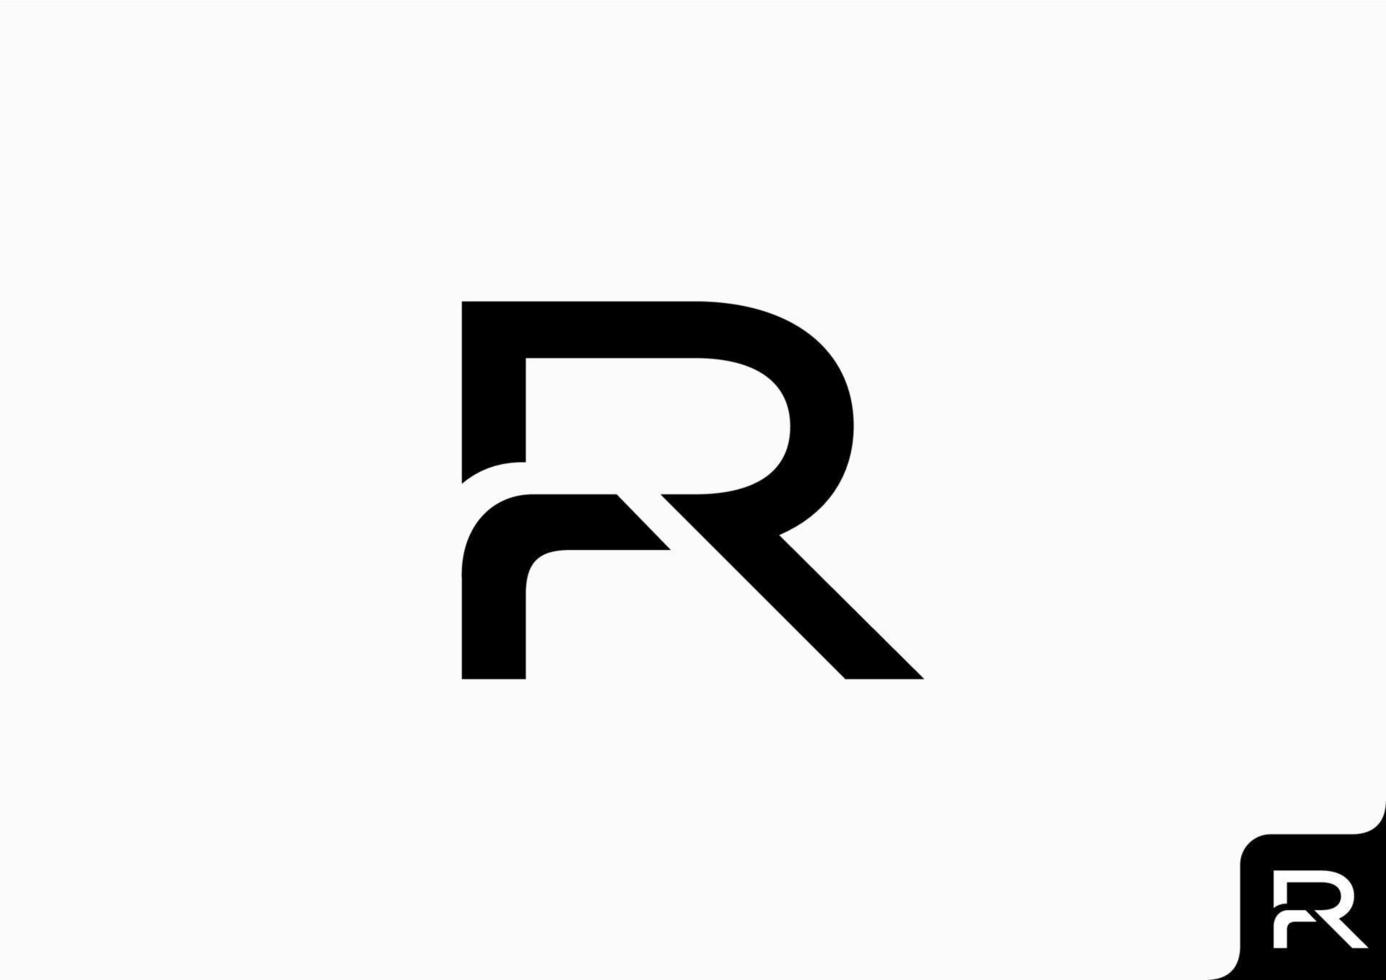 buchstabe r logo design flaches minimalistisches konzept vektor